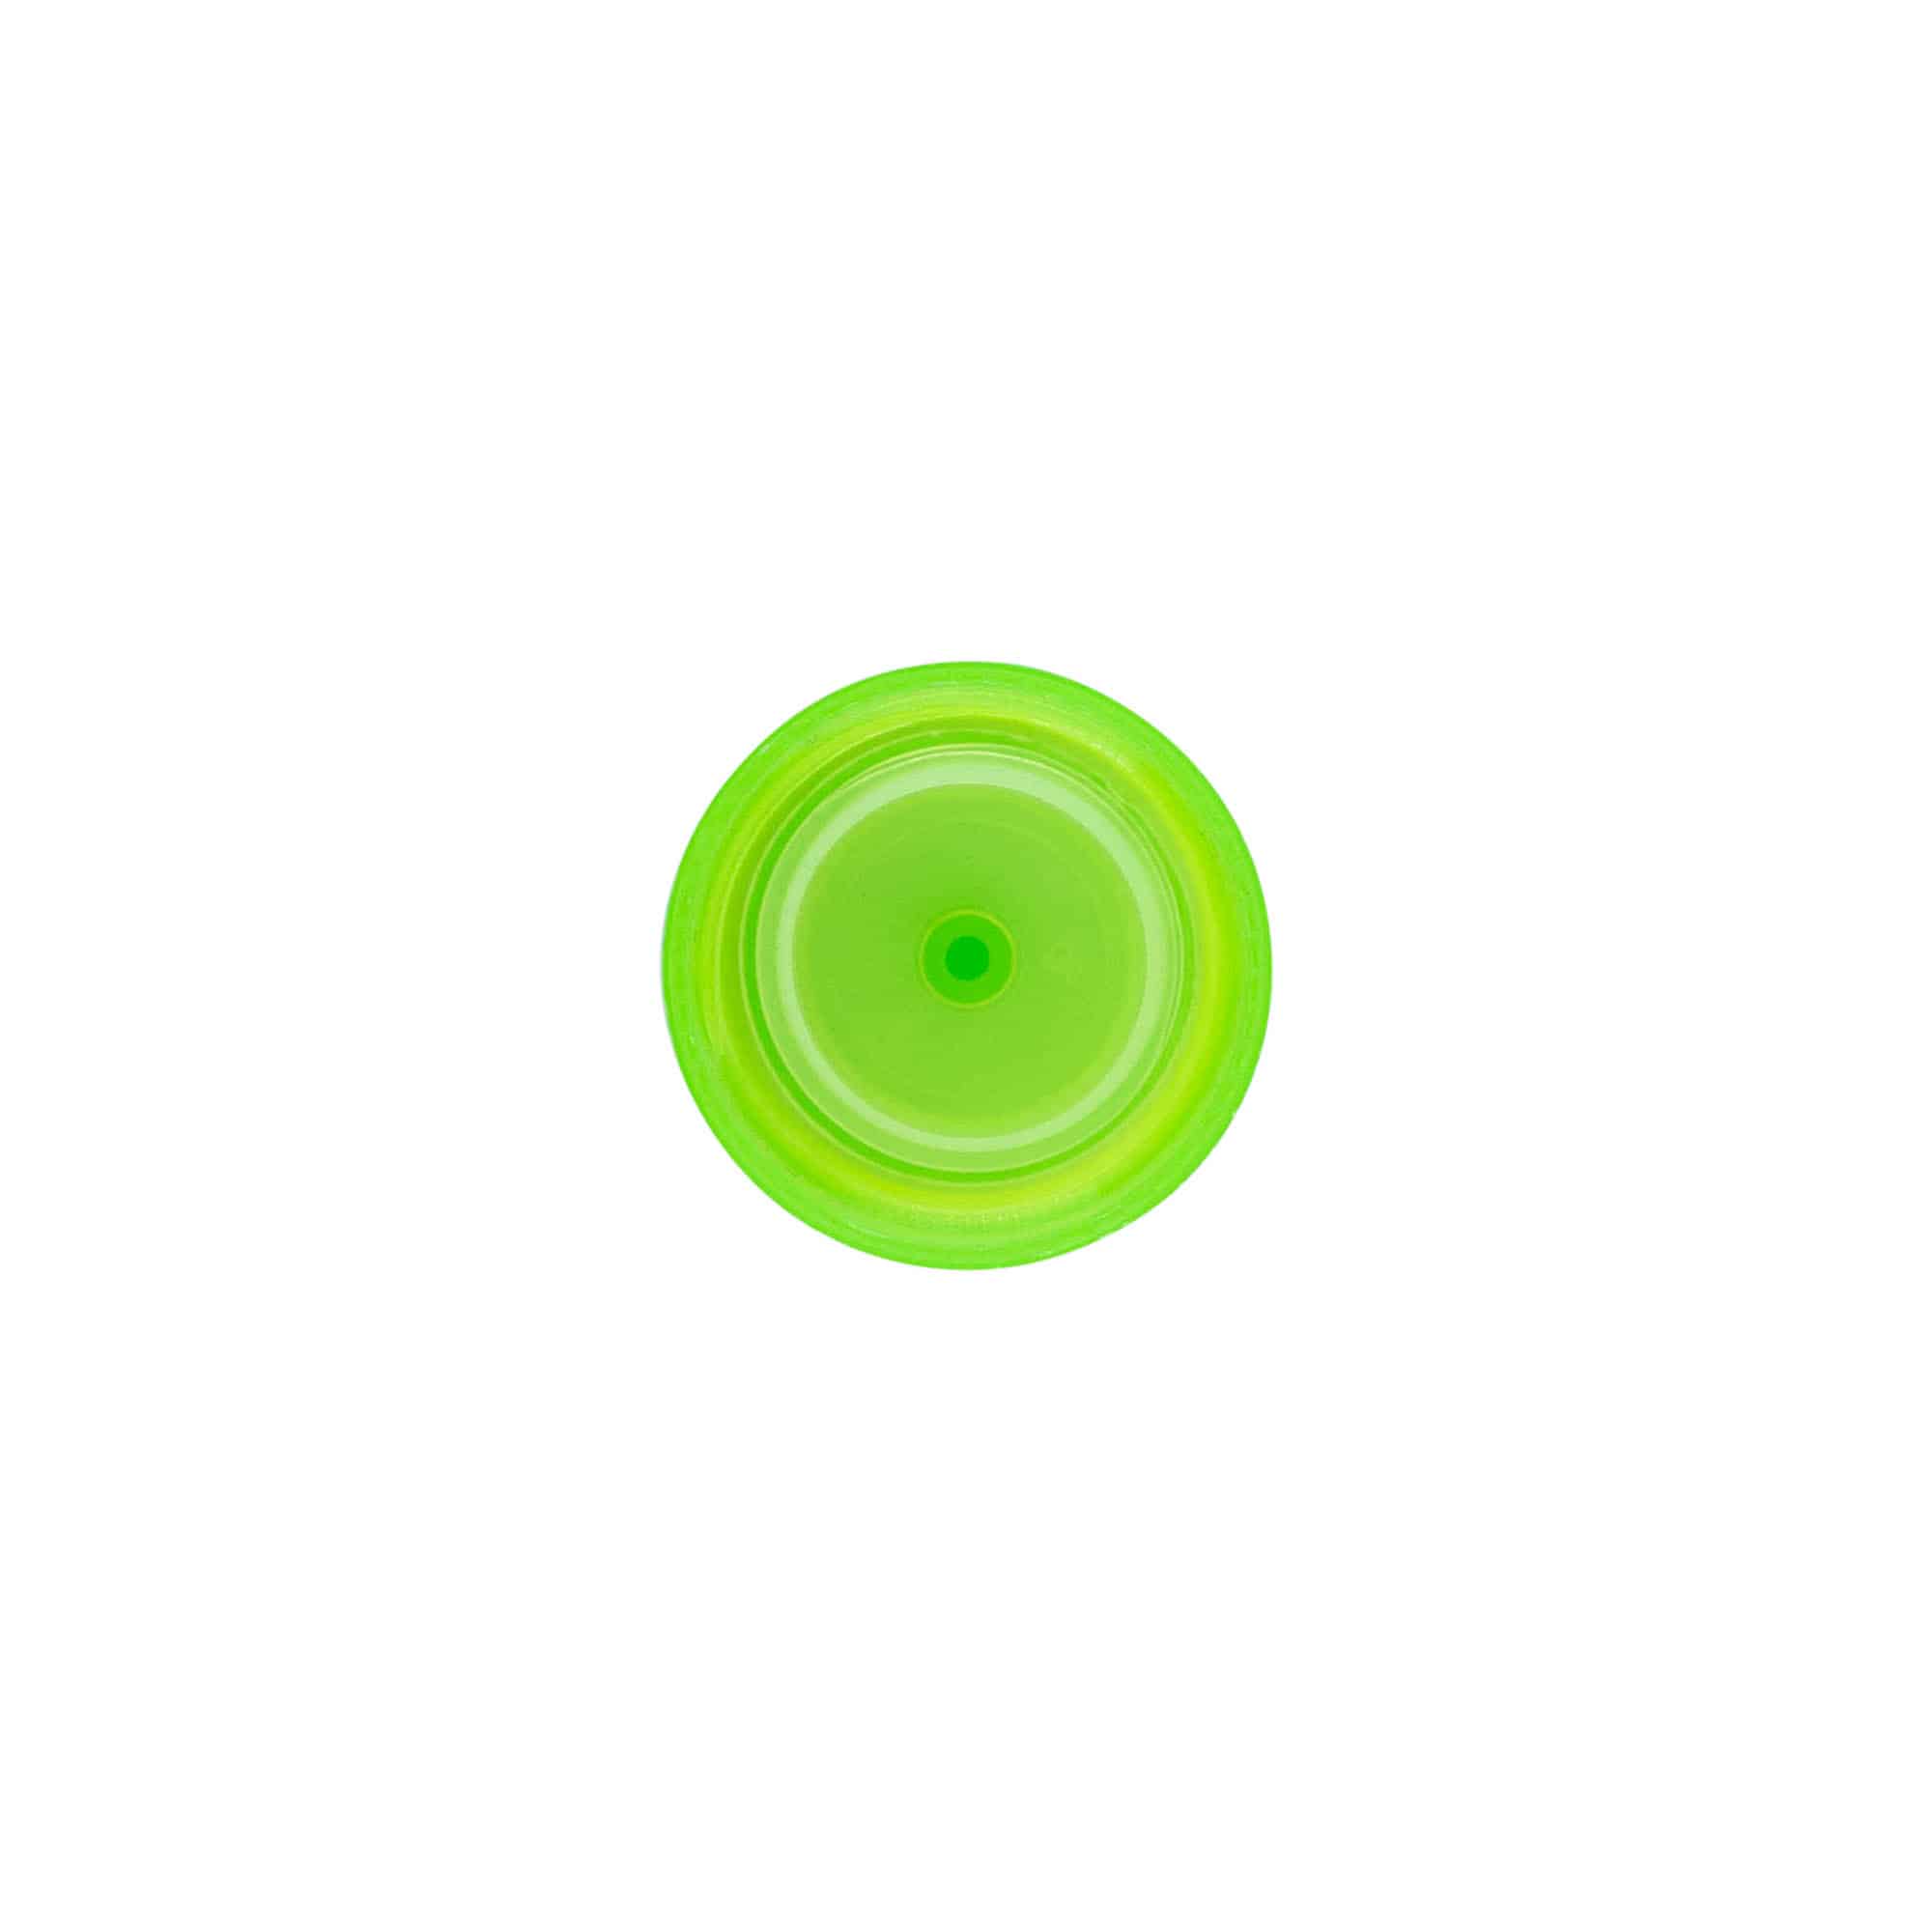 Zakrętka z wkładką natryskową, tworzywo sztuczne PP, kolor zielony, do zamknięcia: GPI 24/410